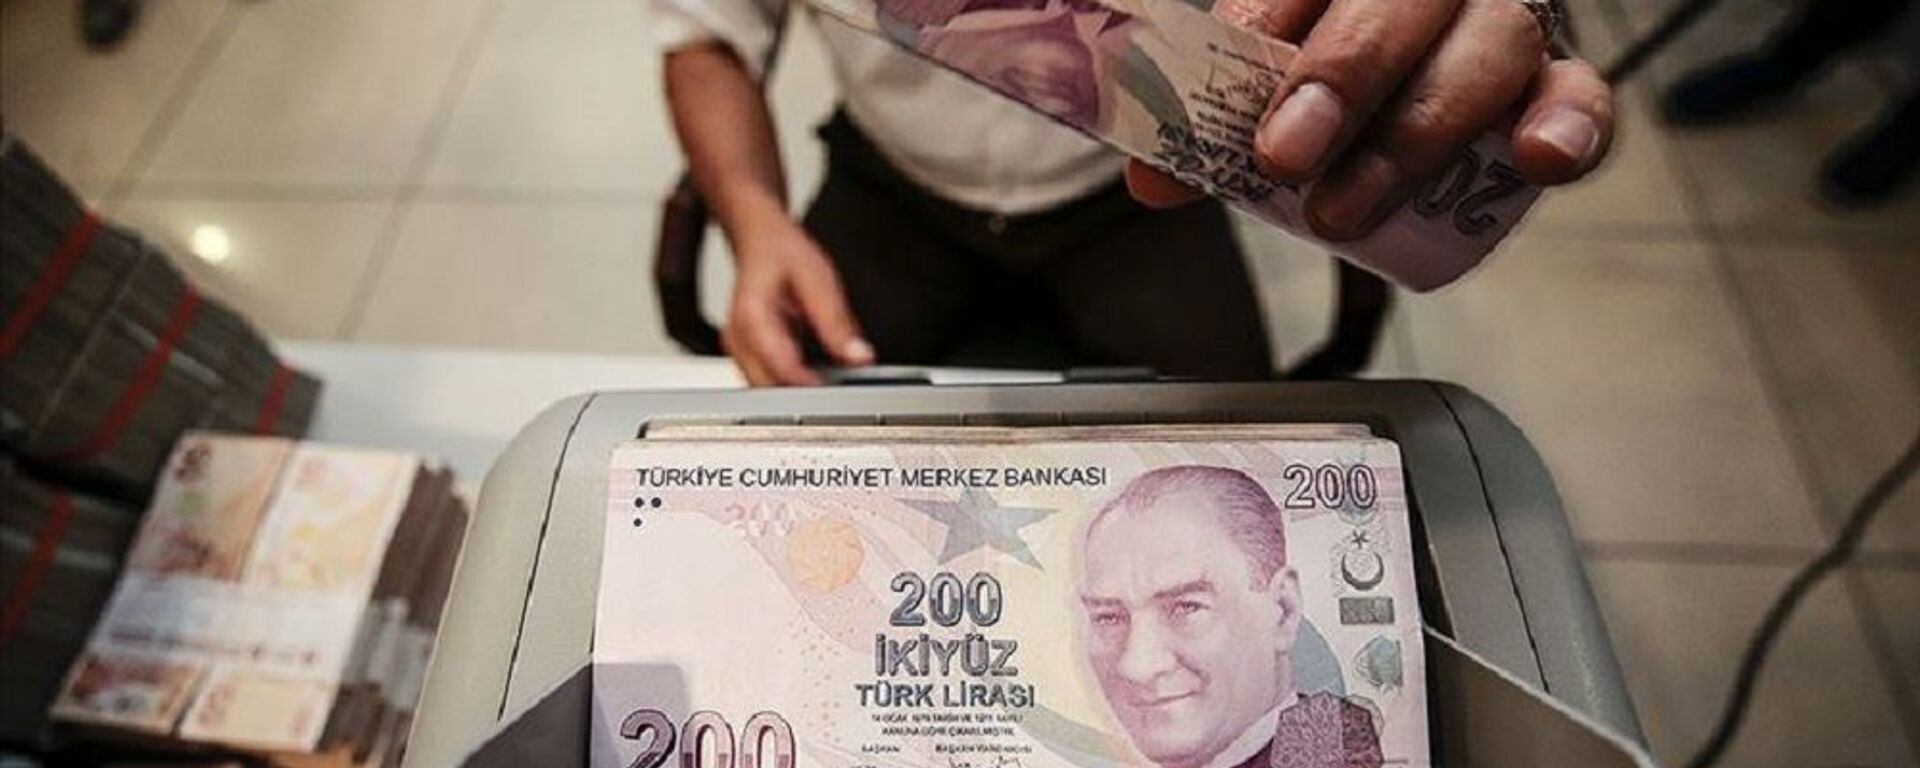 Türk Lirası, banka, ödeme - Sputnik Türkiye, 1920, 03.11.2021